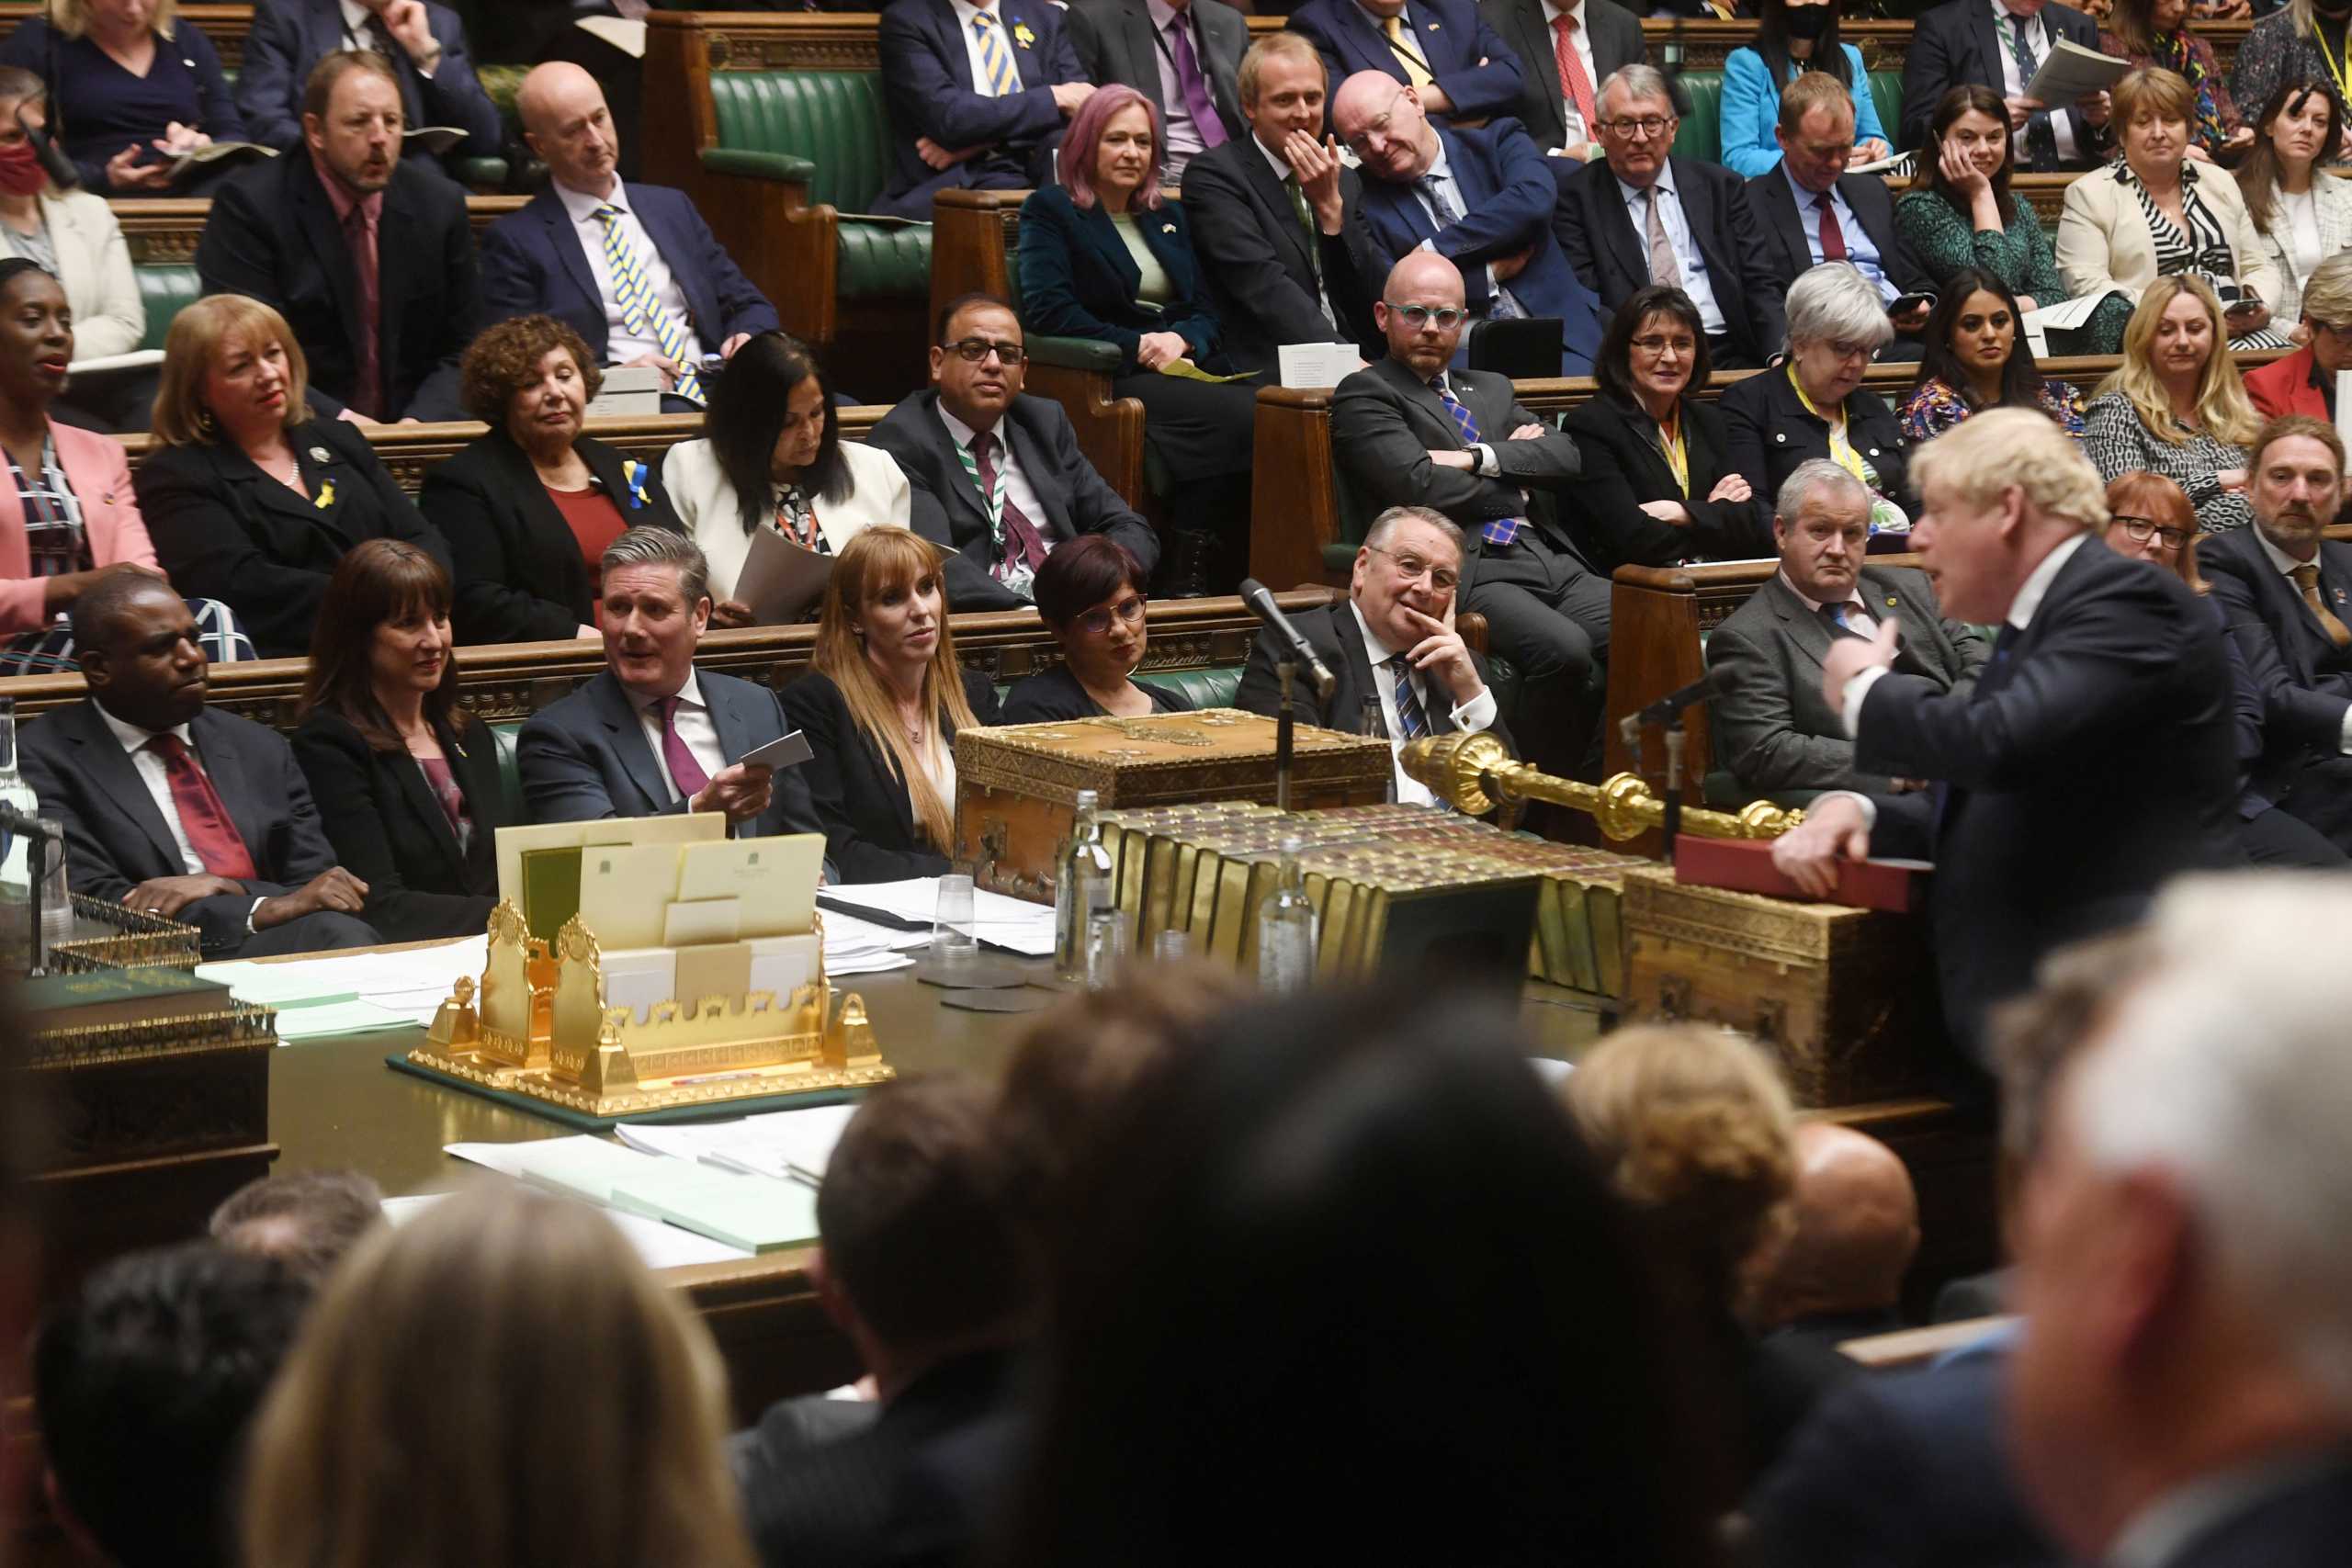 Βρετανίδα υπουργός σε άντρες βουλευτές: «Κρατήστε τα χέρια στις τσέπες σας»